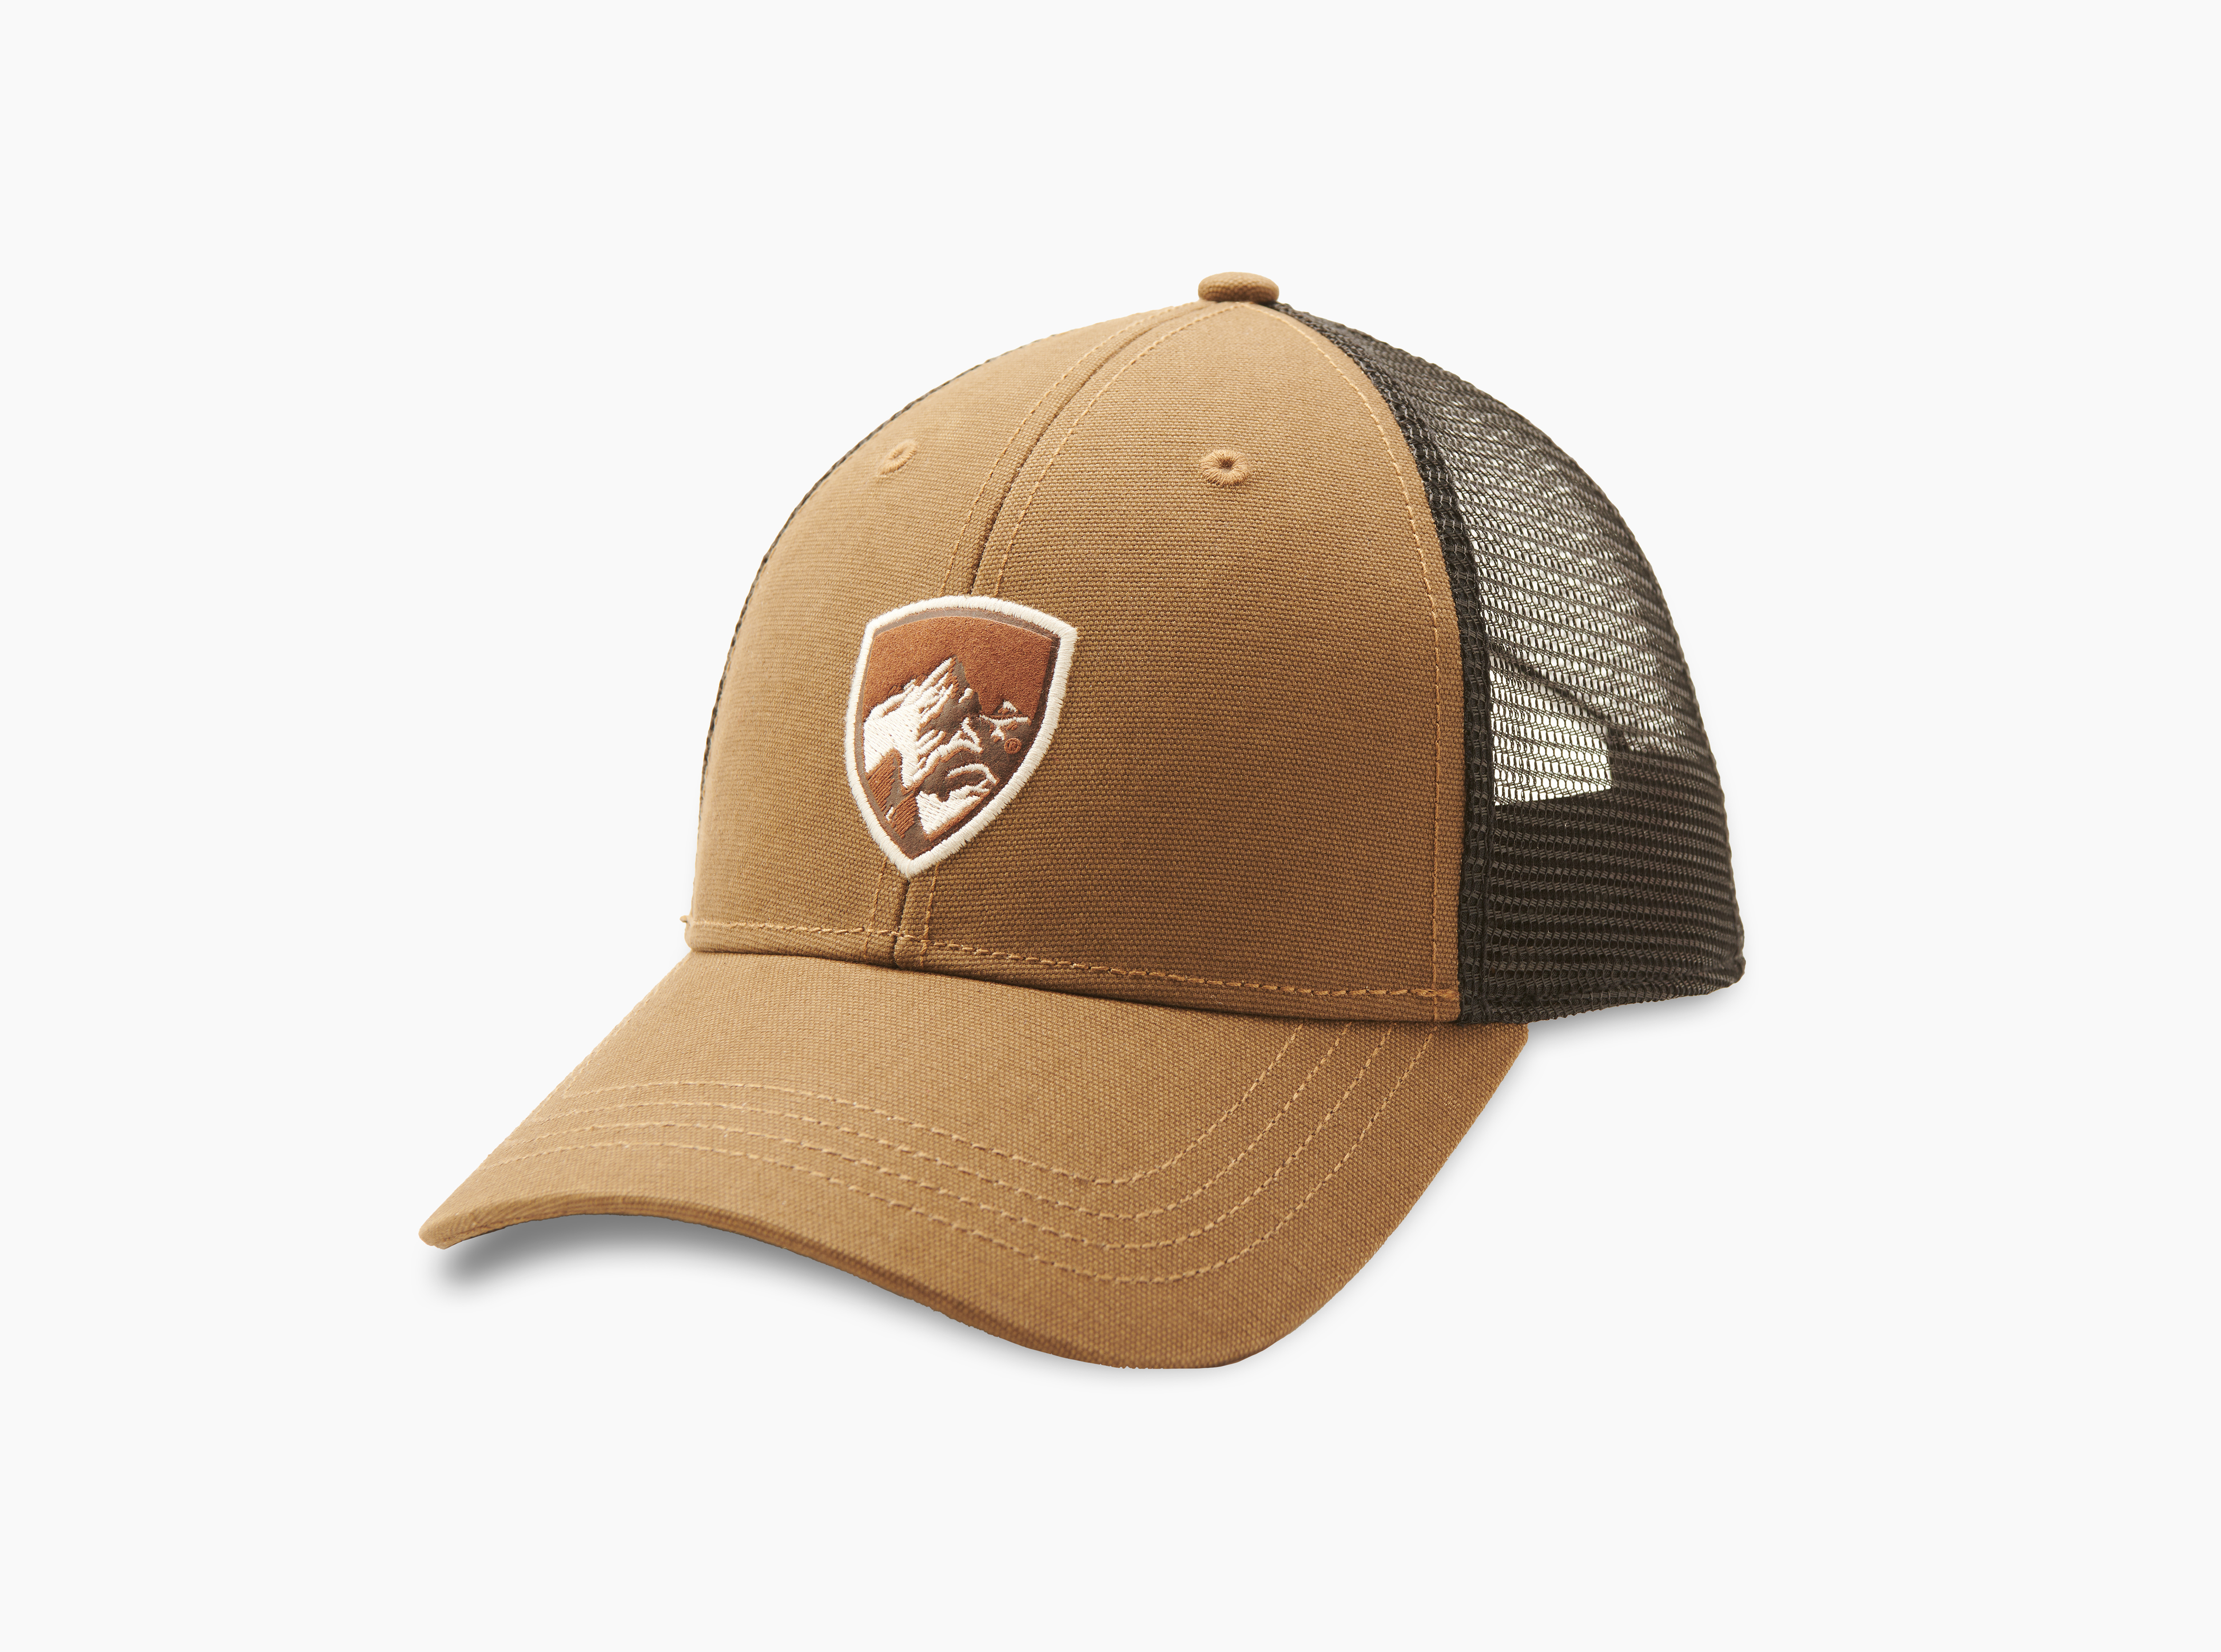 Kuhl Men's The Law Trucker Hat – Take It Outside